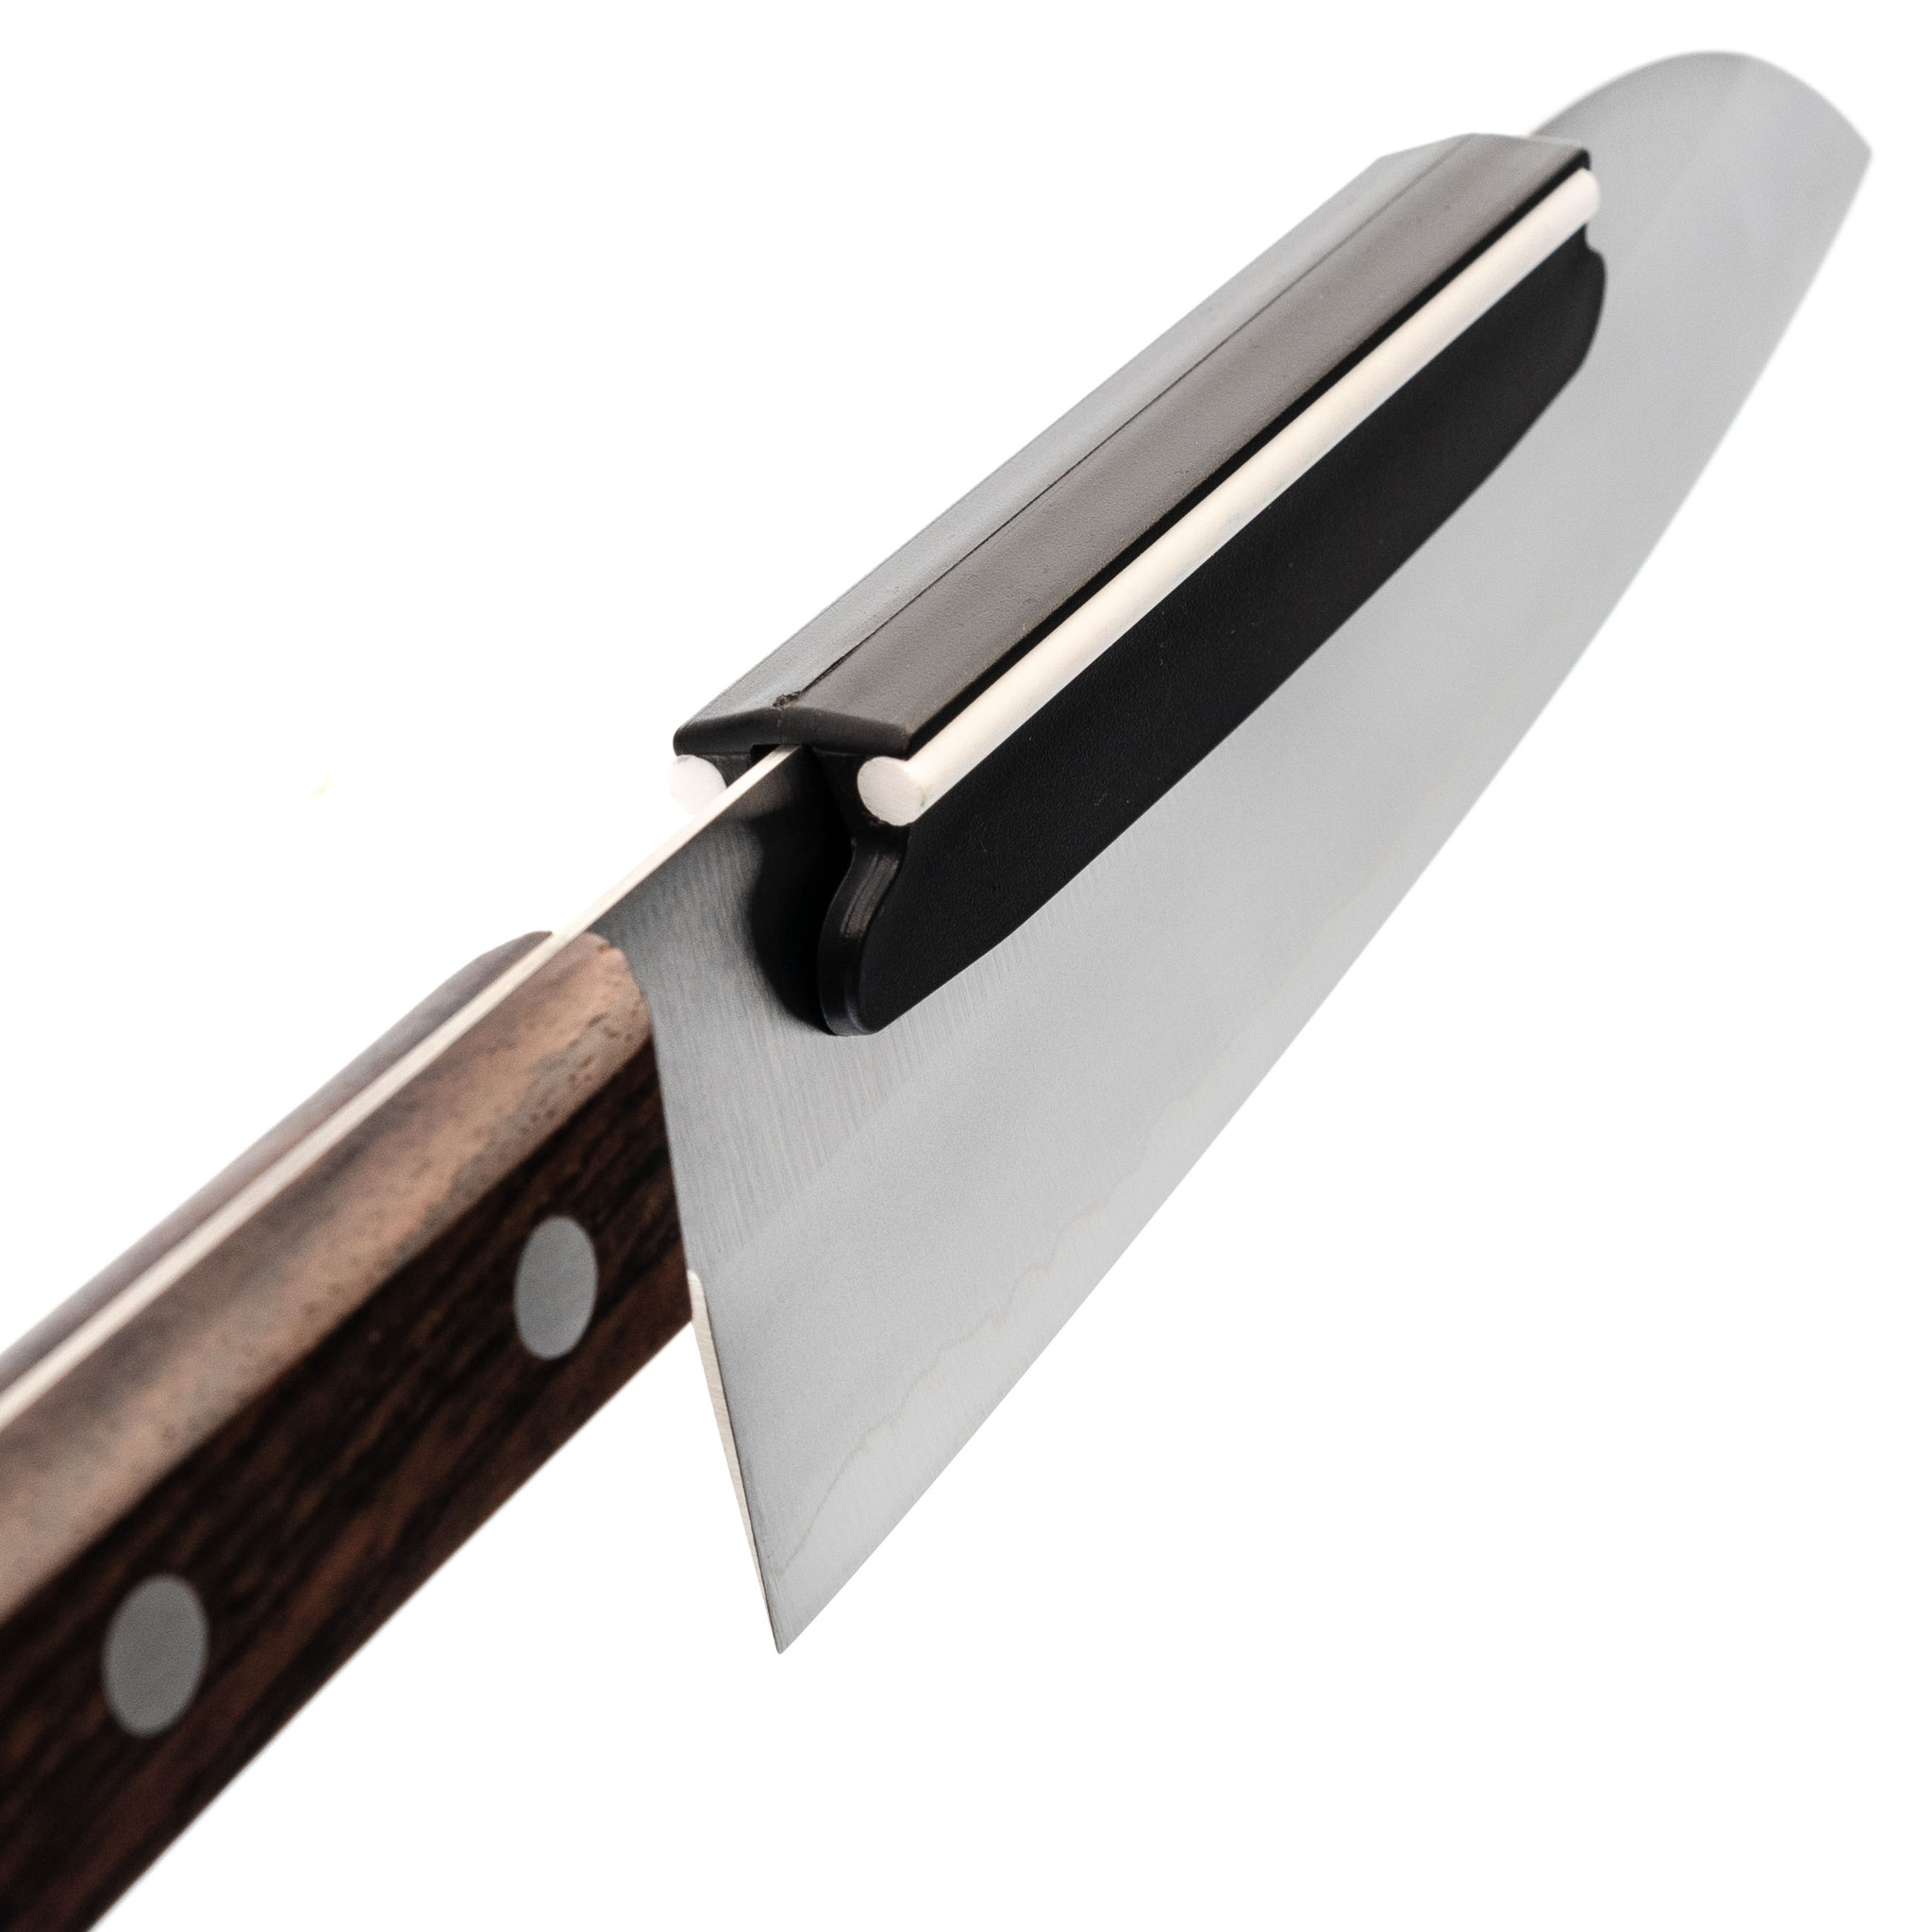 Как заточить кухонный нож: угол заточки, виды заточки